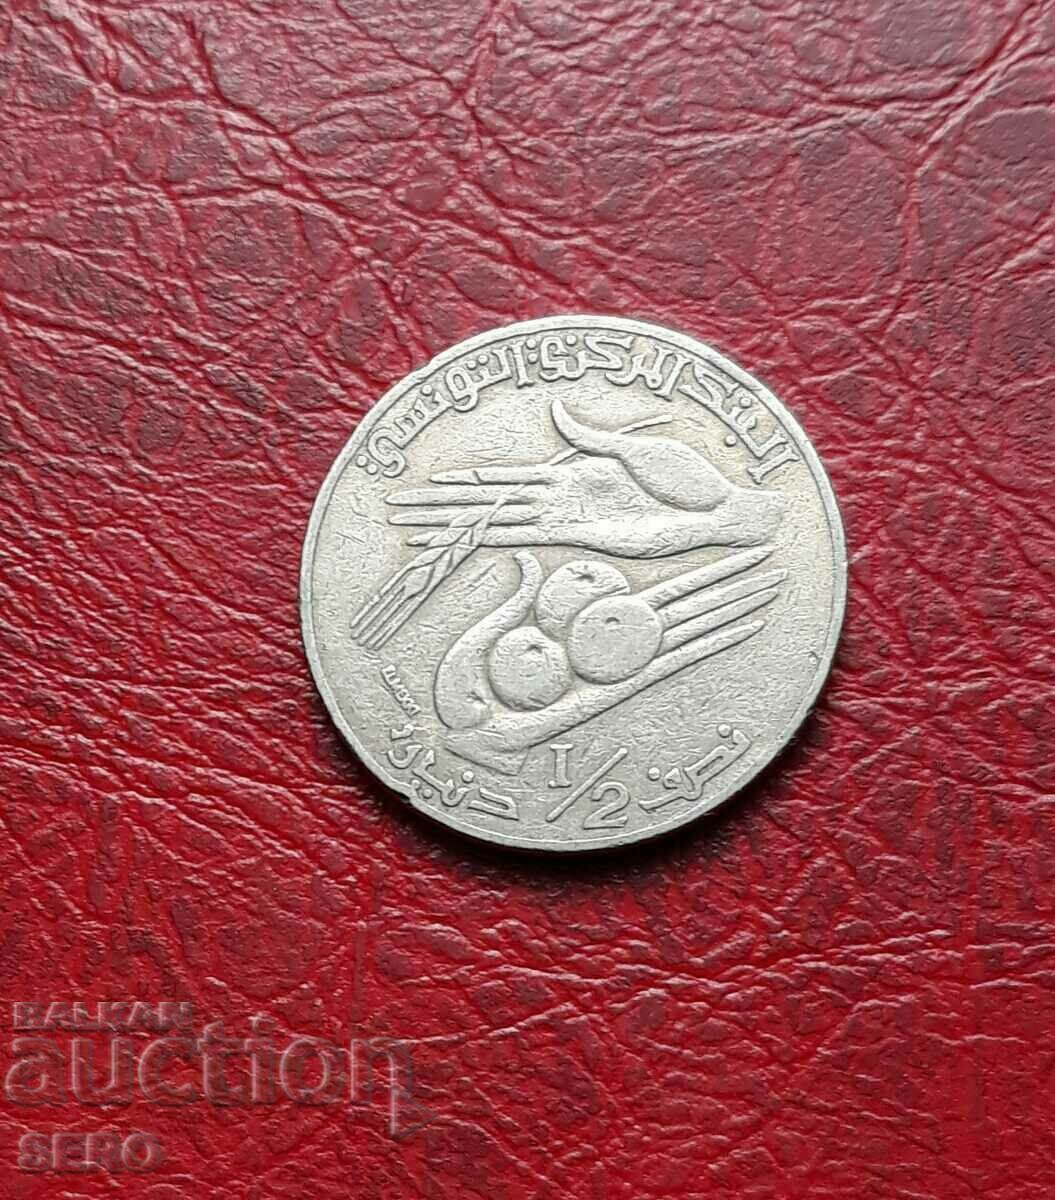 Tunisia-1/2 dinar 1996